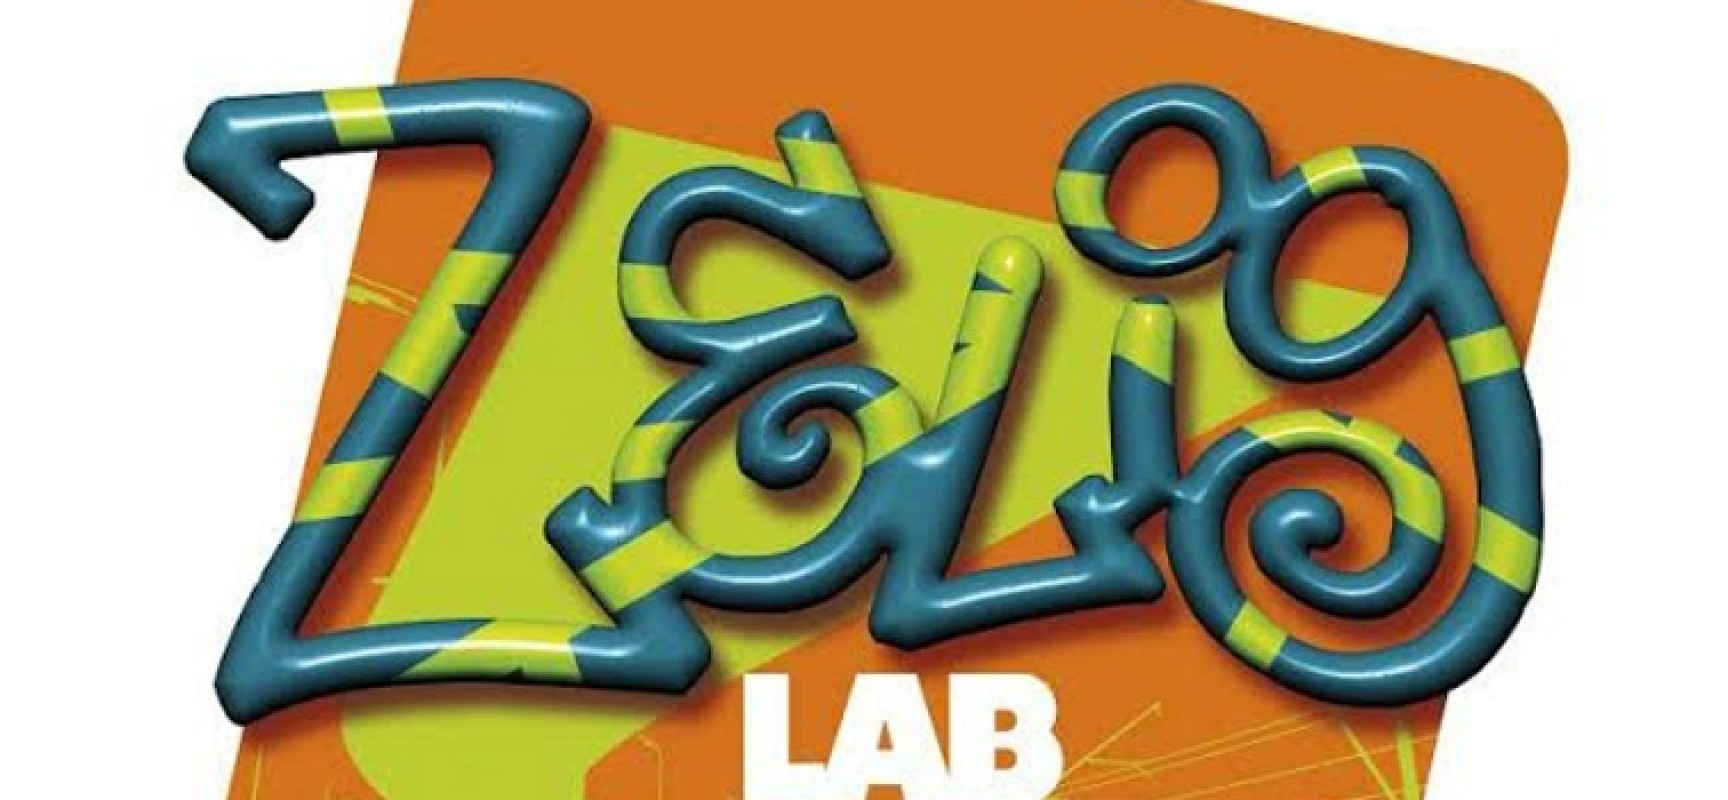 Zelig Lab, oggi ultimo appuntamento al circolo Open Source